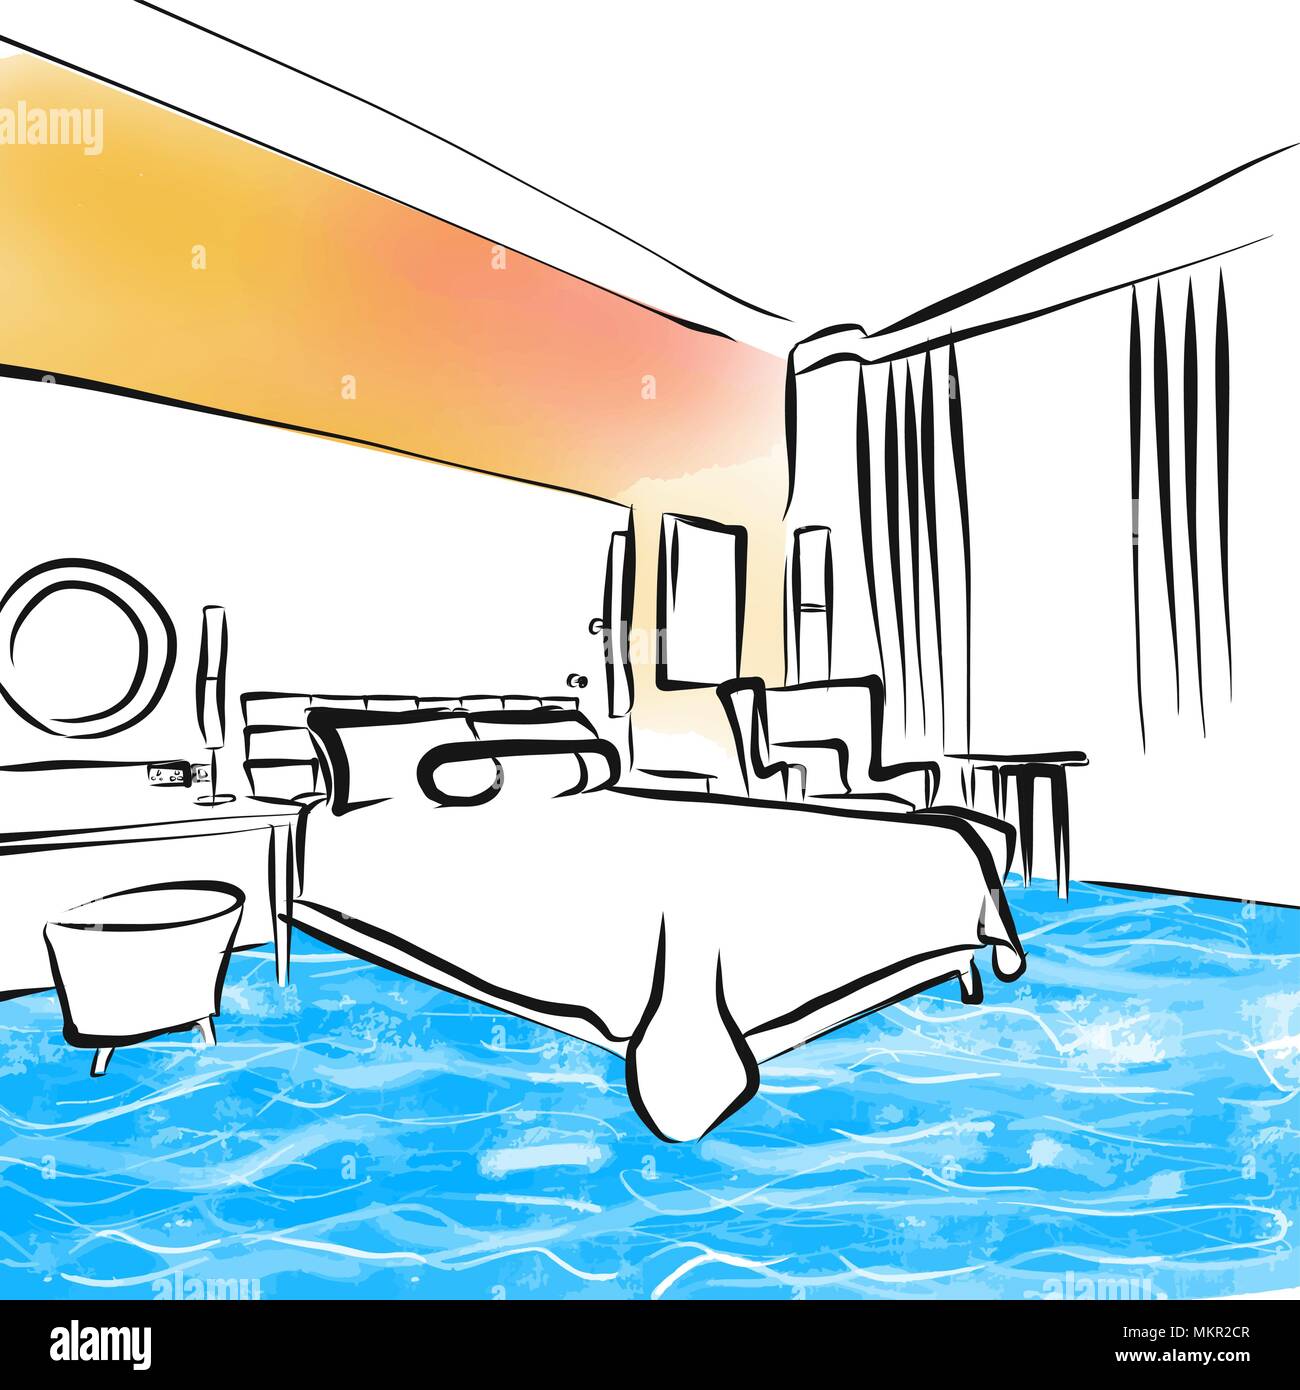 Concepto de diseño dibujo de habitación de hotel, dibujado a mano ilustración vectorial Ilustración del Vector